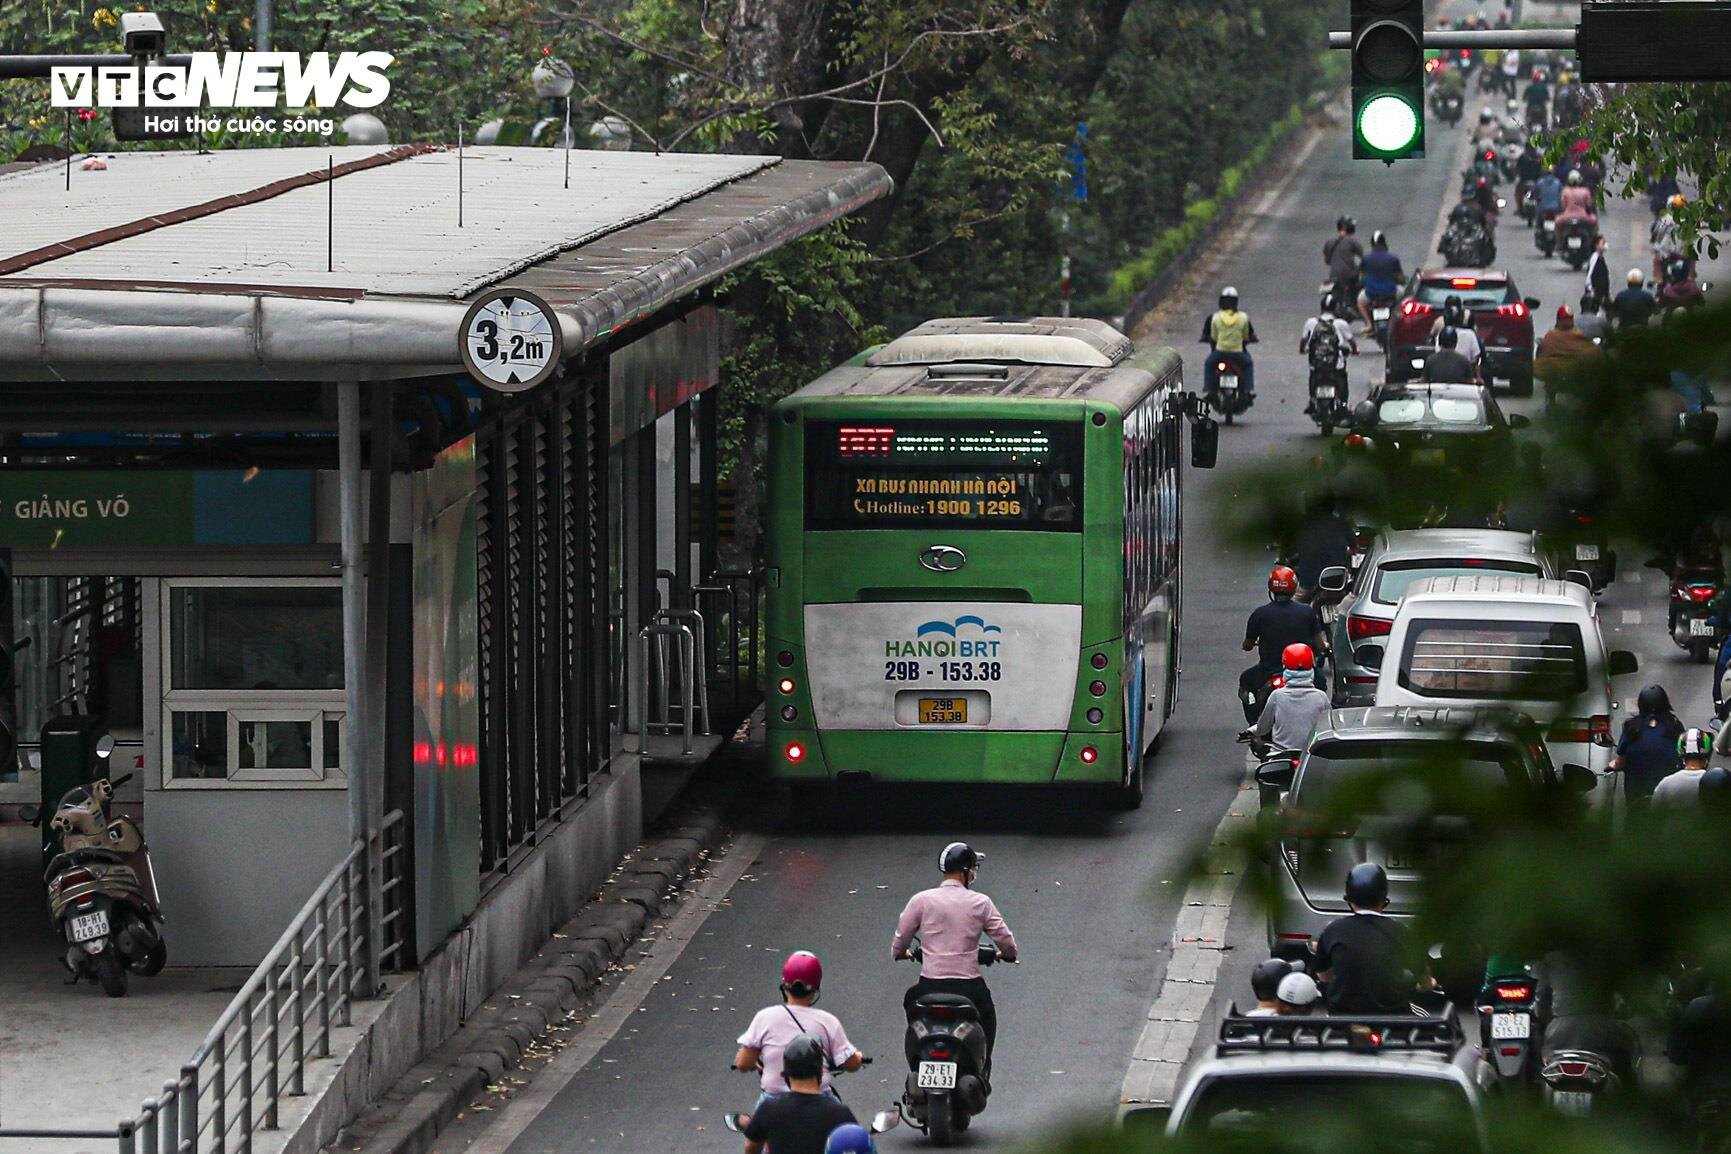 Bị cướp làn đường, buýt nhanh BRT chôn chân trên phố Hà Nội - 12